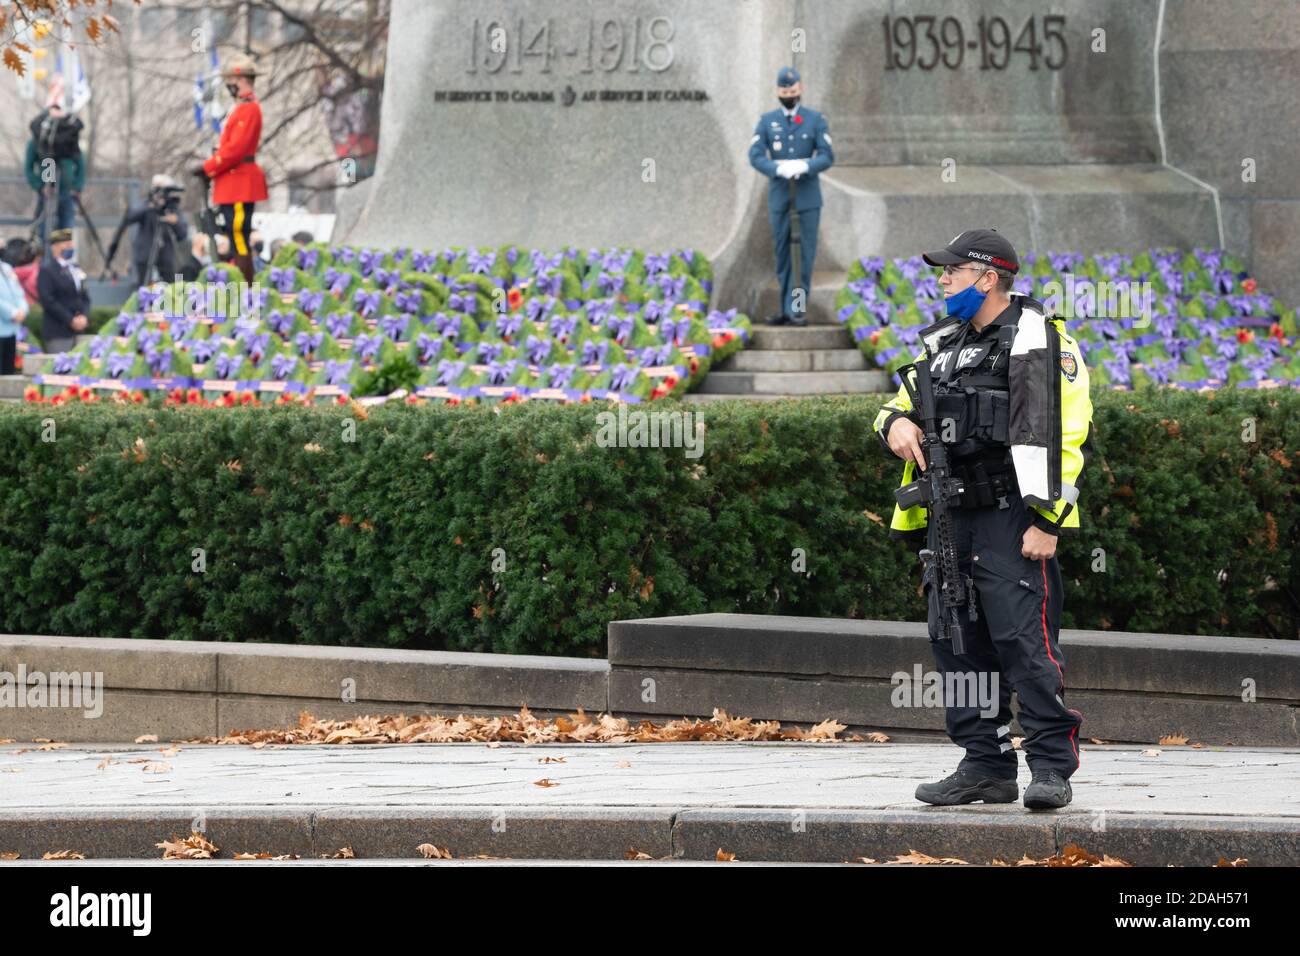 Un oficial de policía visiblemente armado impide que el público en general asista a la ceremonia del día de la memoria en Ottawa debido a la COVID-19. Foto de stock